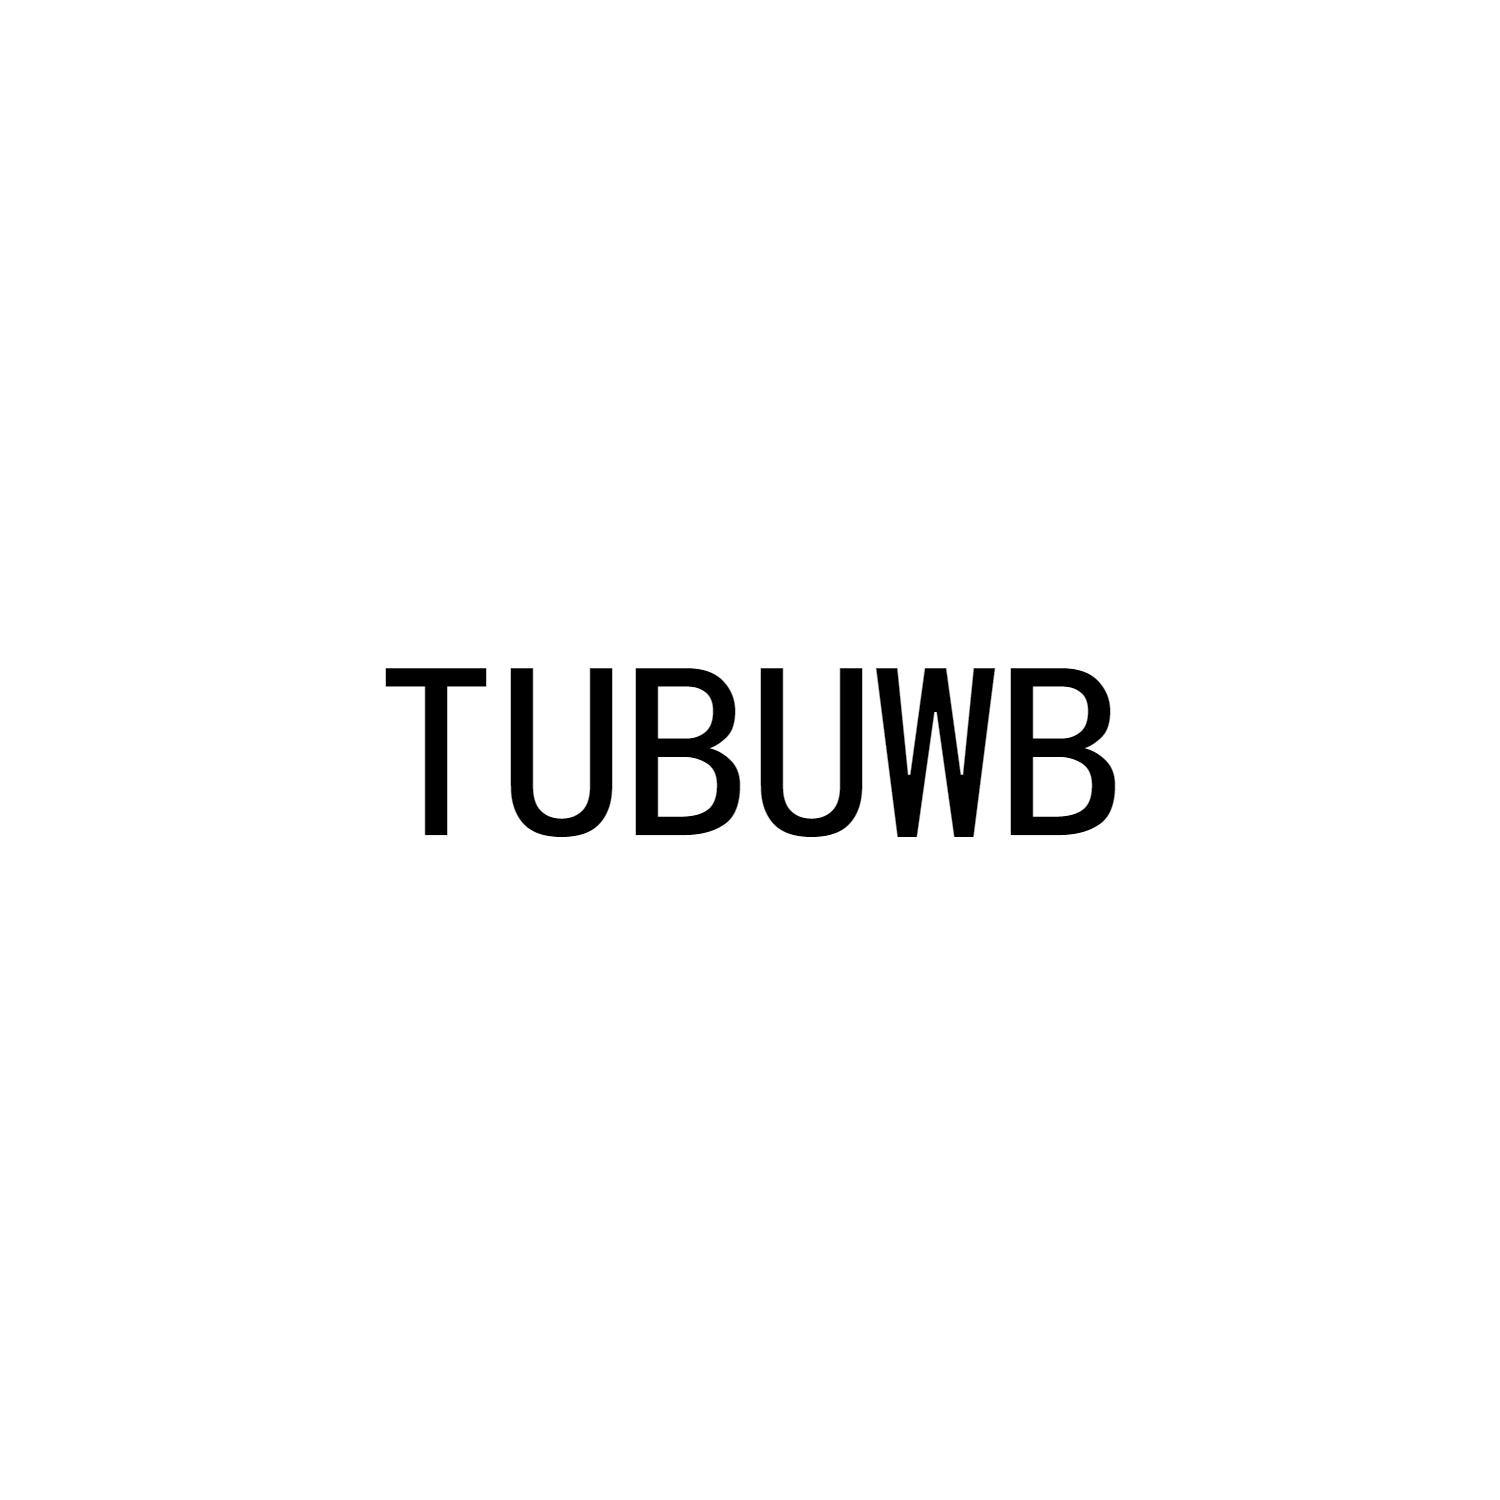 TUBUWB